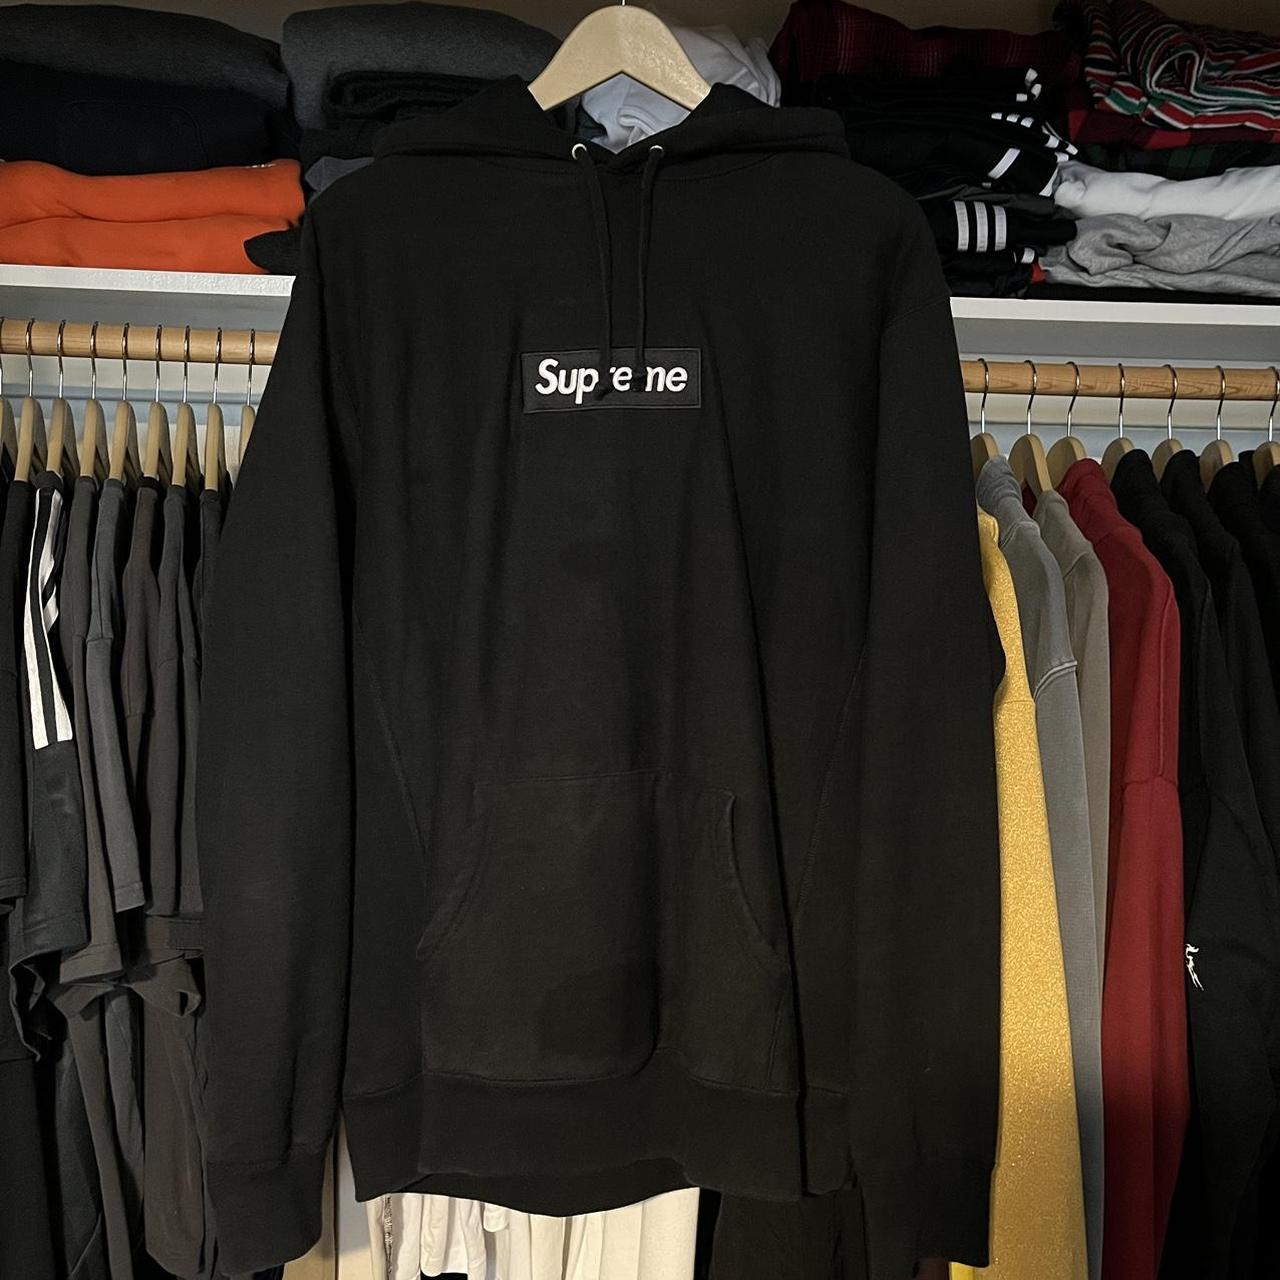 Supreme 2016 black box logo hoodie in a size XL Has... - Depop